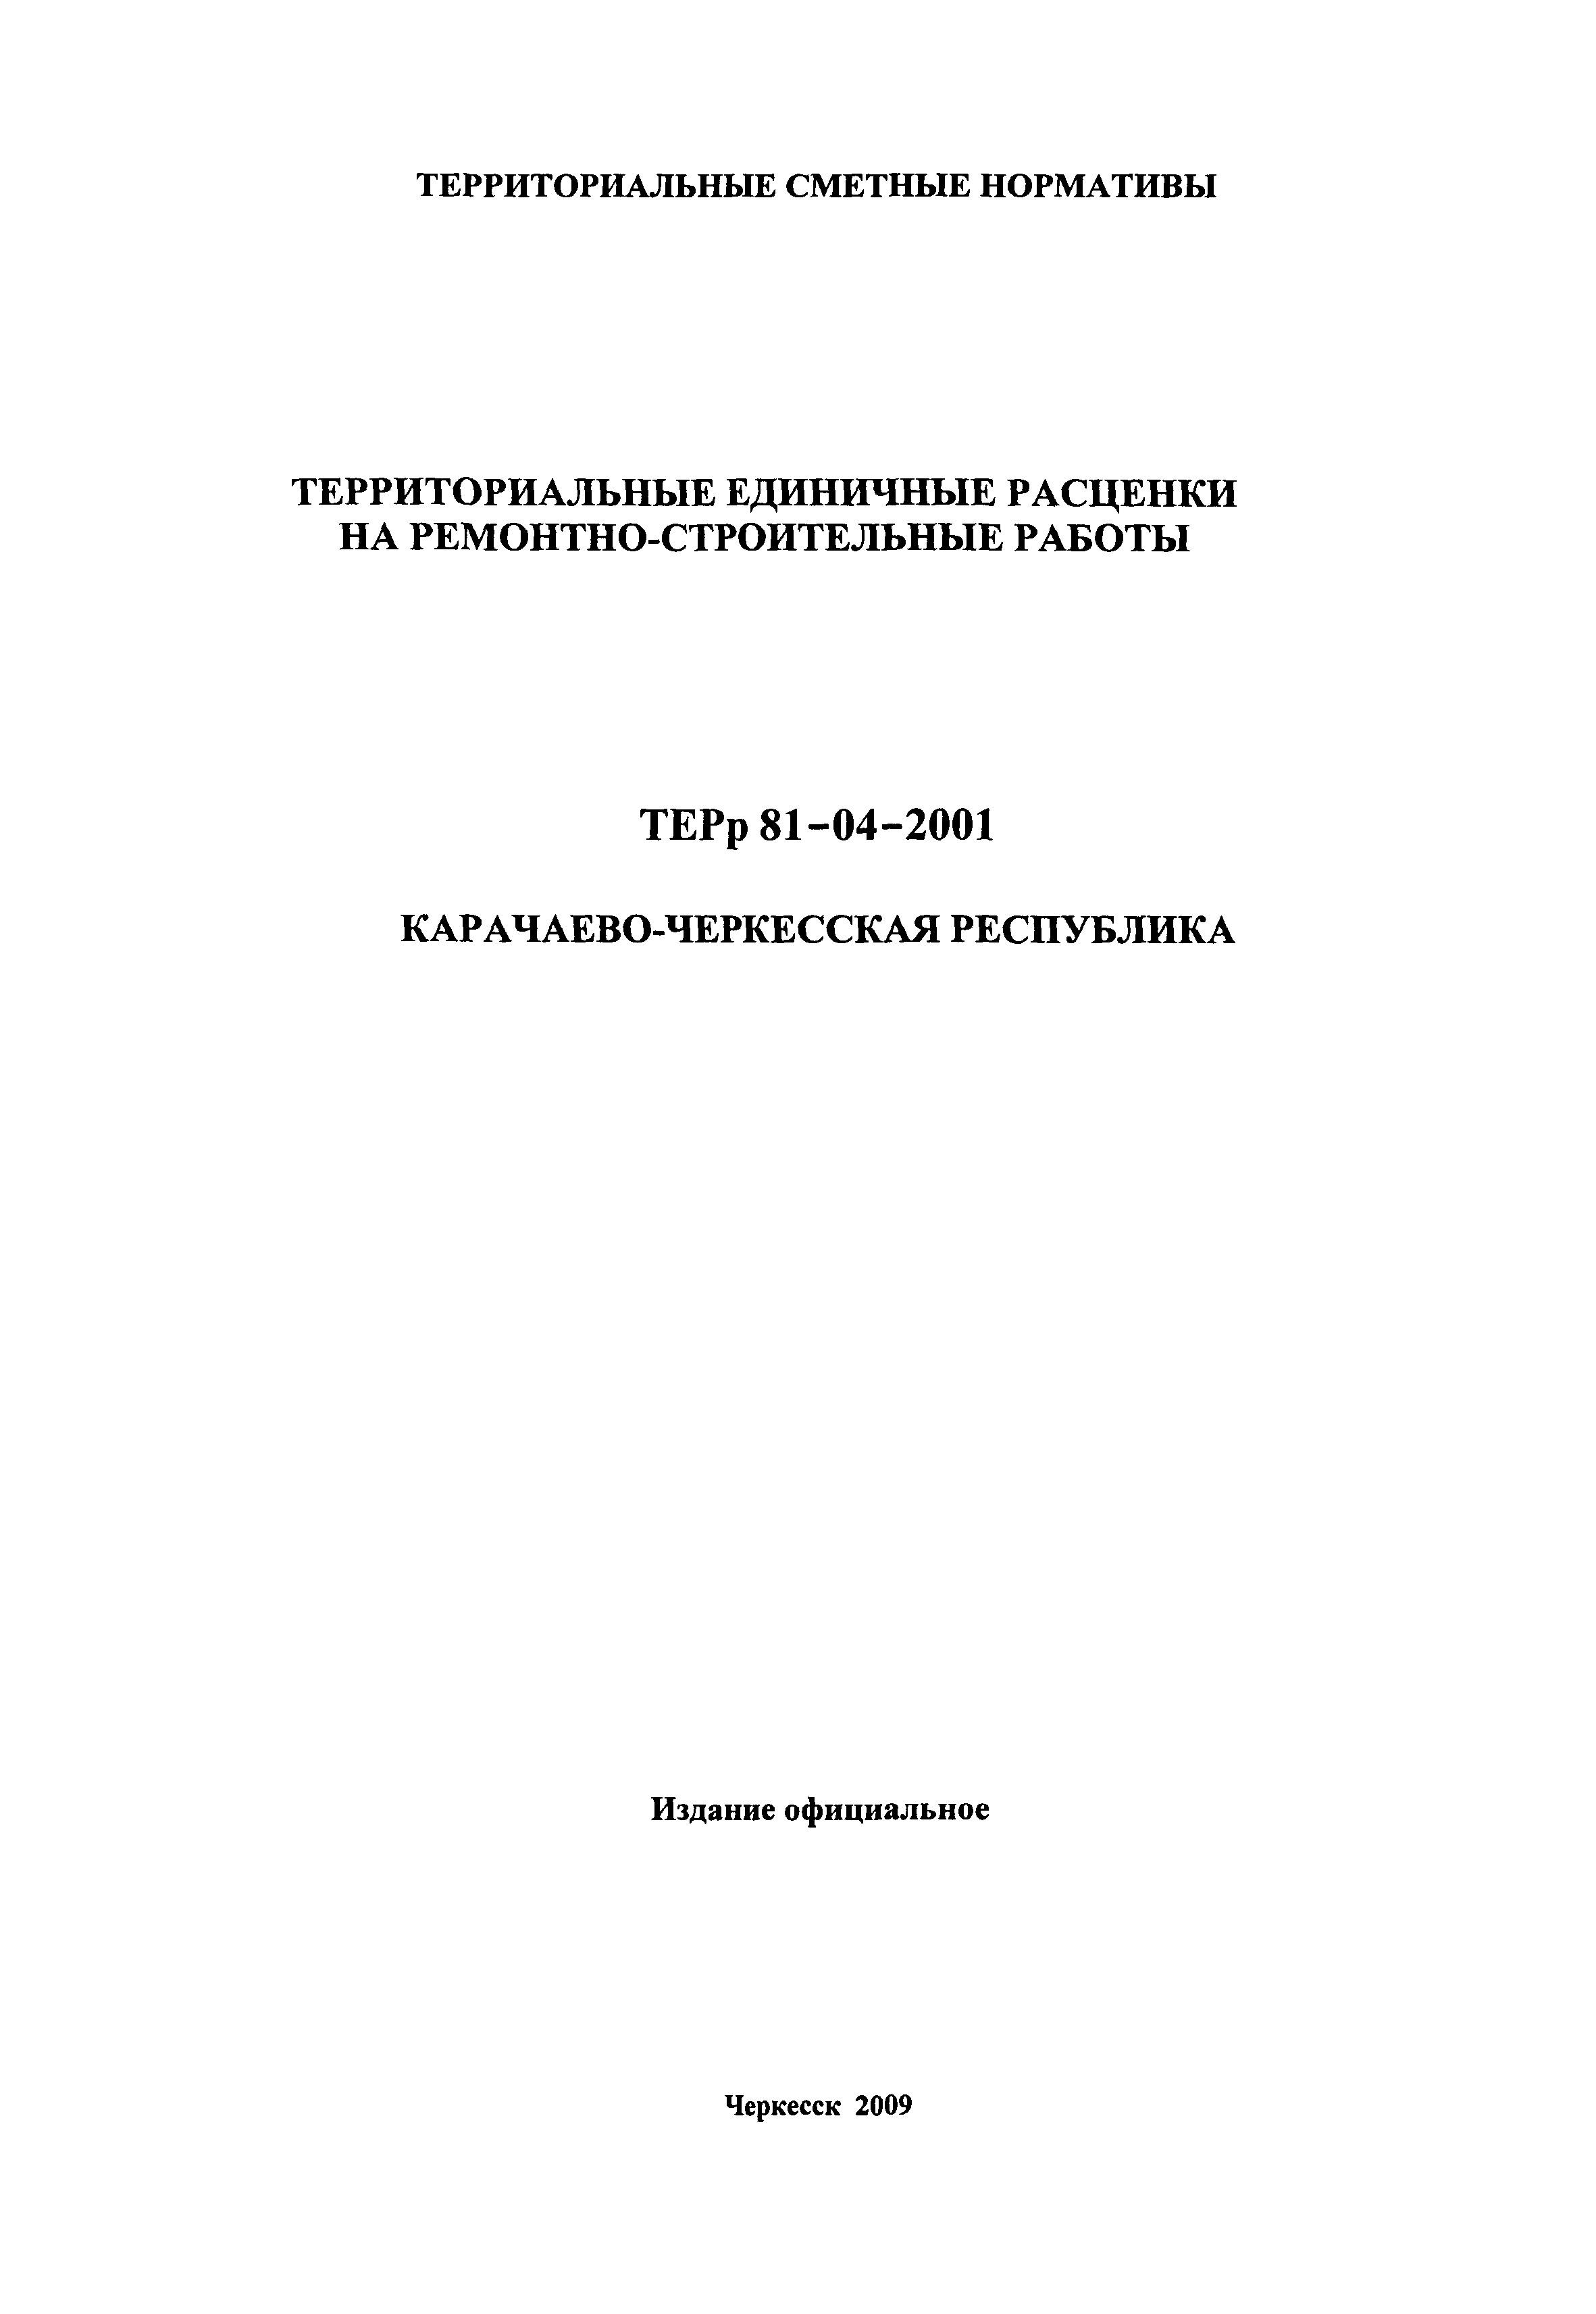 ТЕРр Карачаево-Черкесская Республика 2001-53